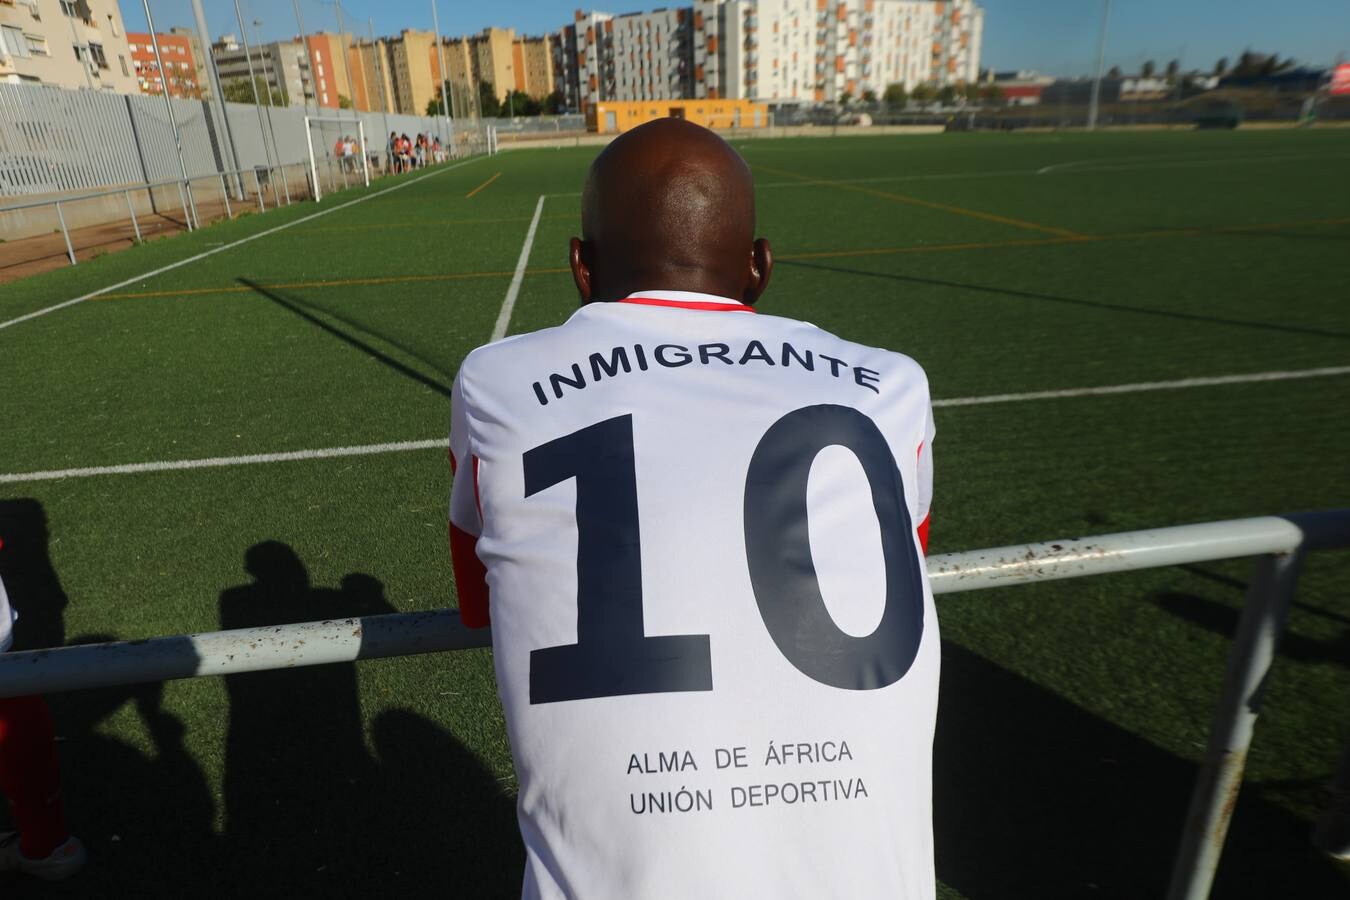 FOTOS: El Alma de África luce insultos racistas en sus camisetas